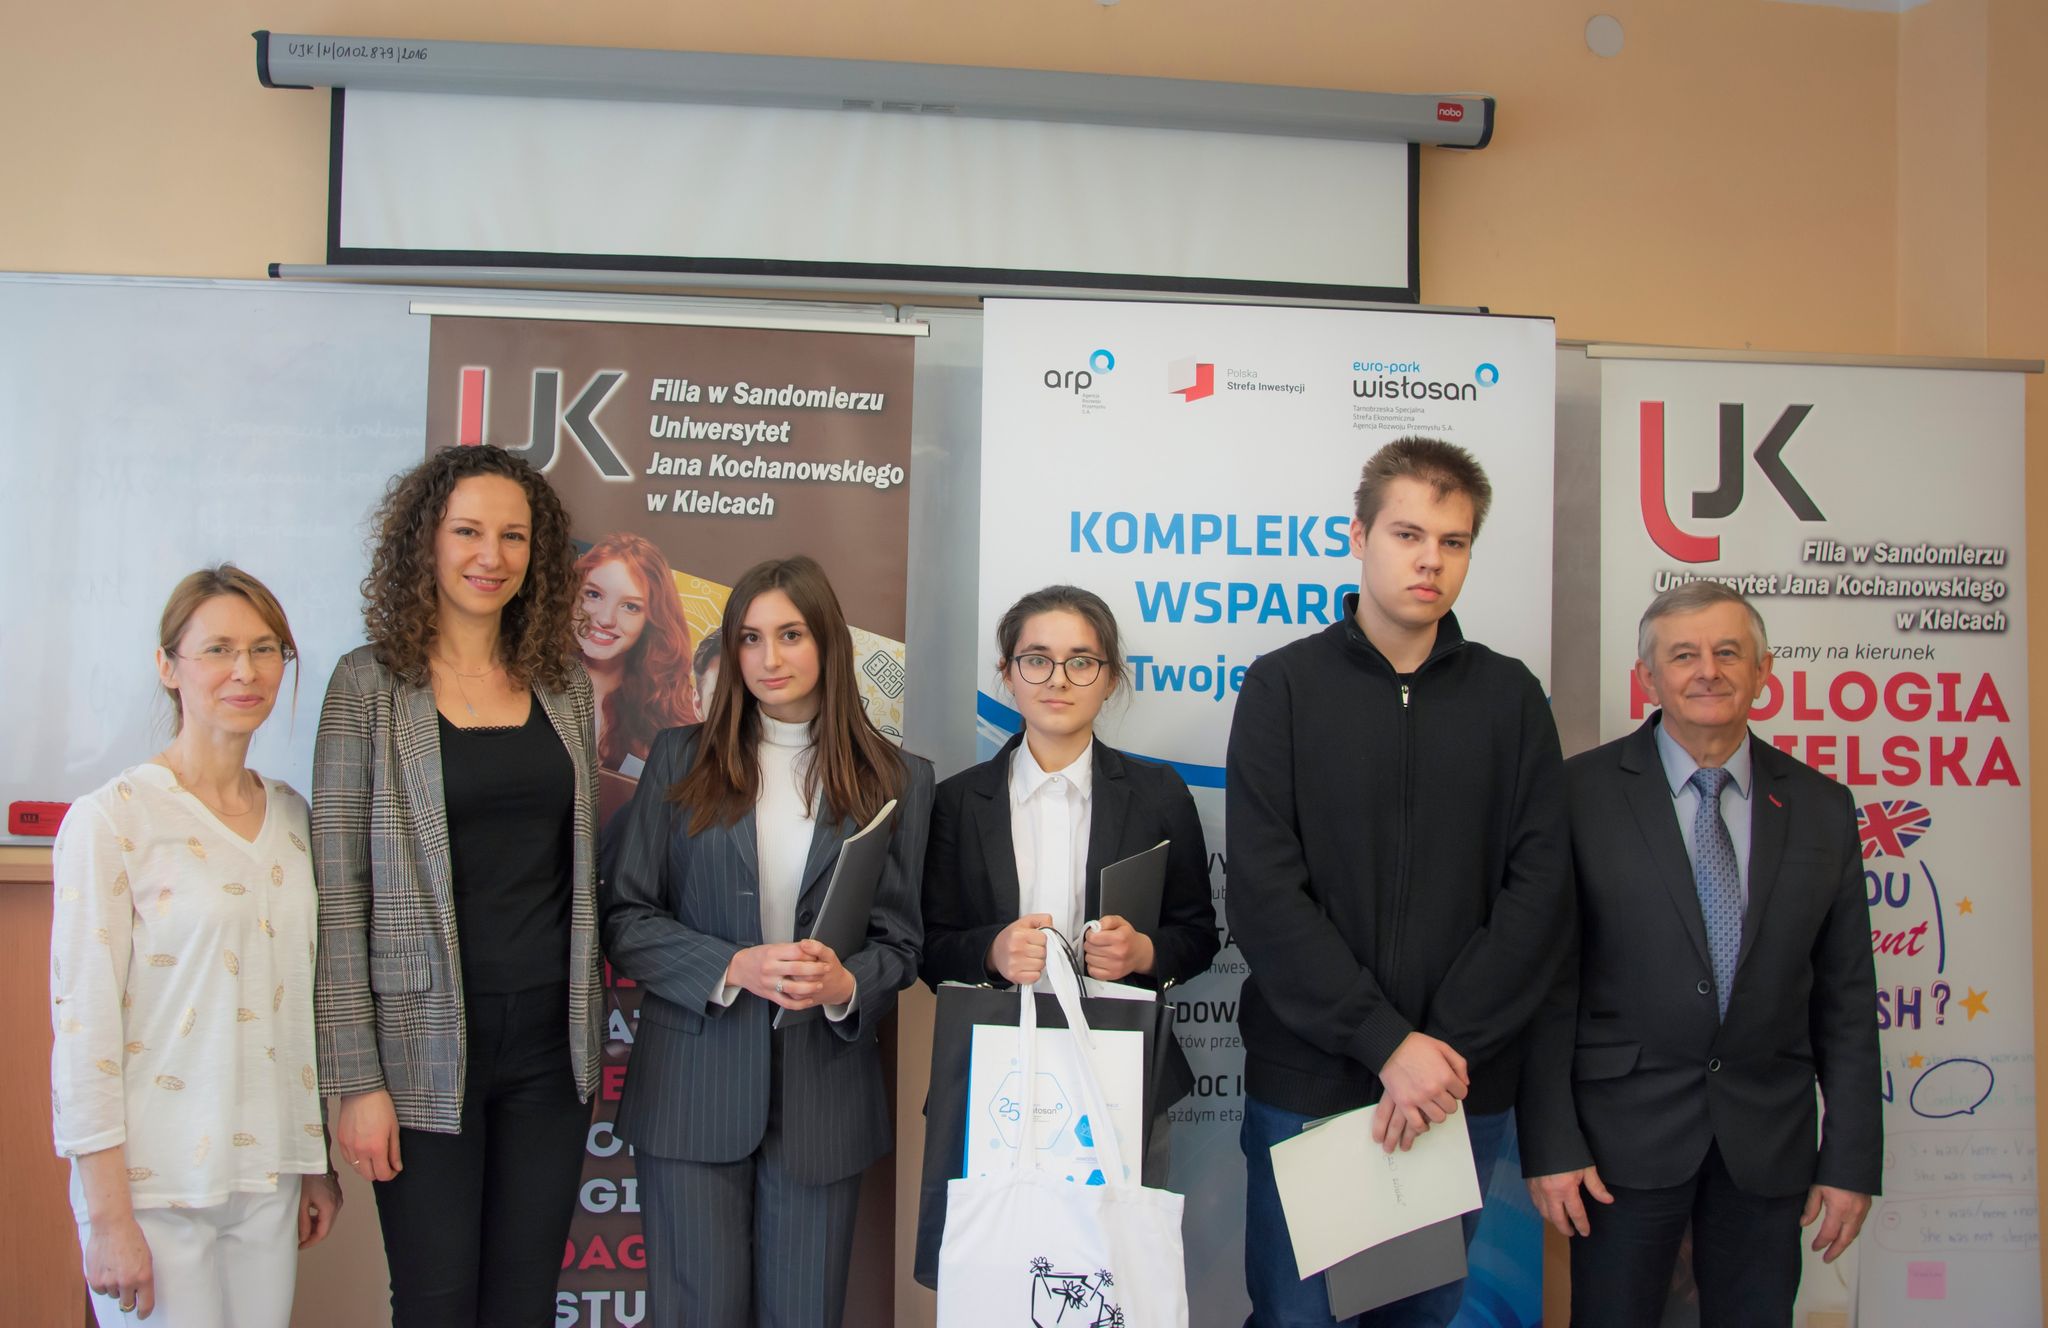 Organizaotrzy konkursu wraz z laureatami na tle banerów UJK oraz agencji rozwoju